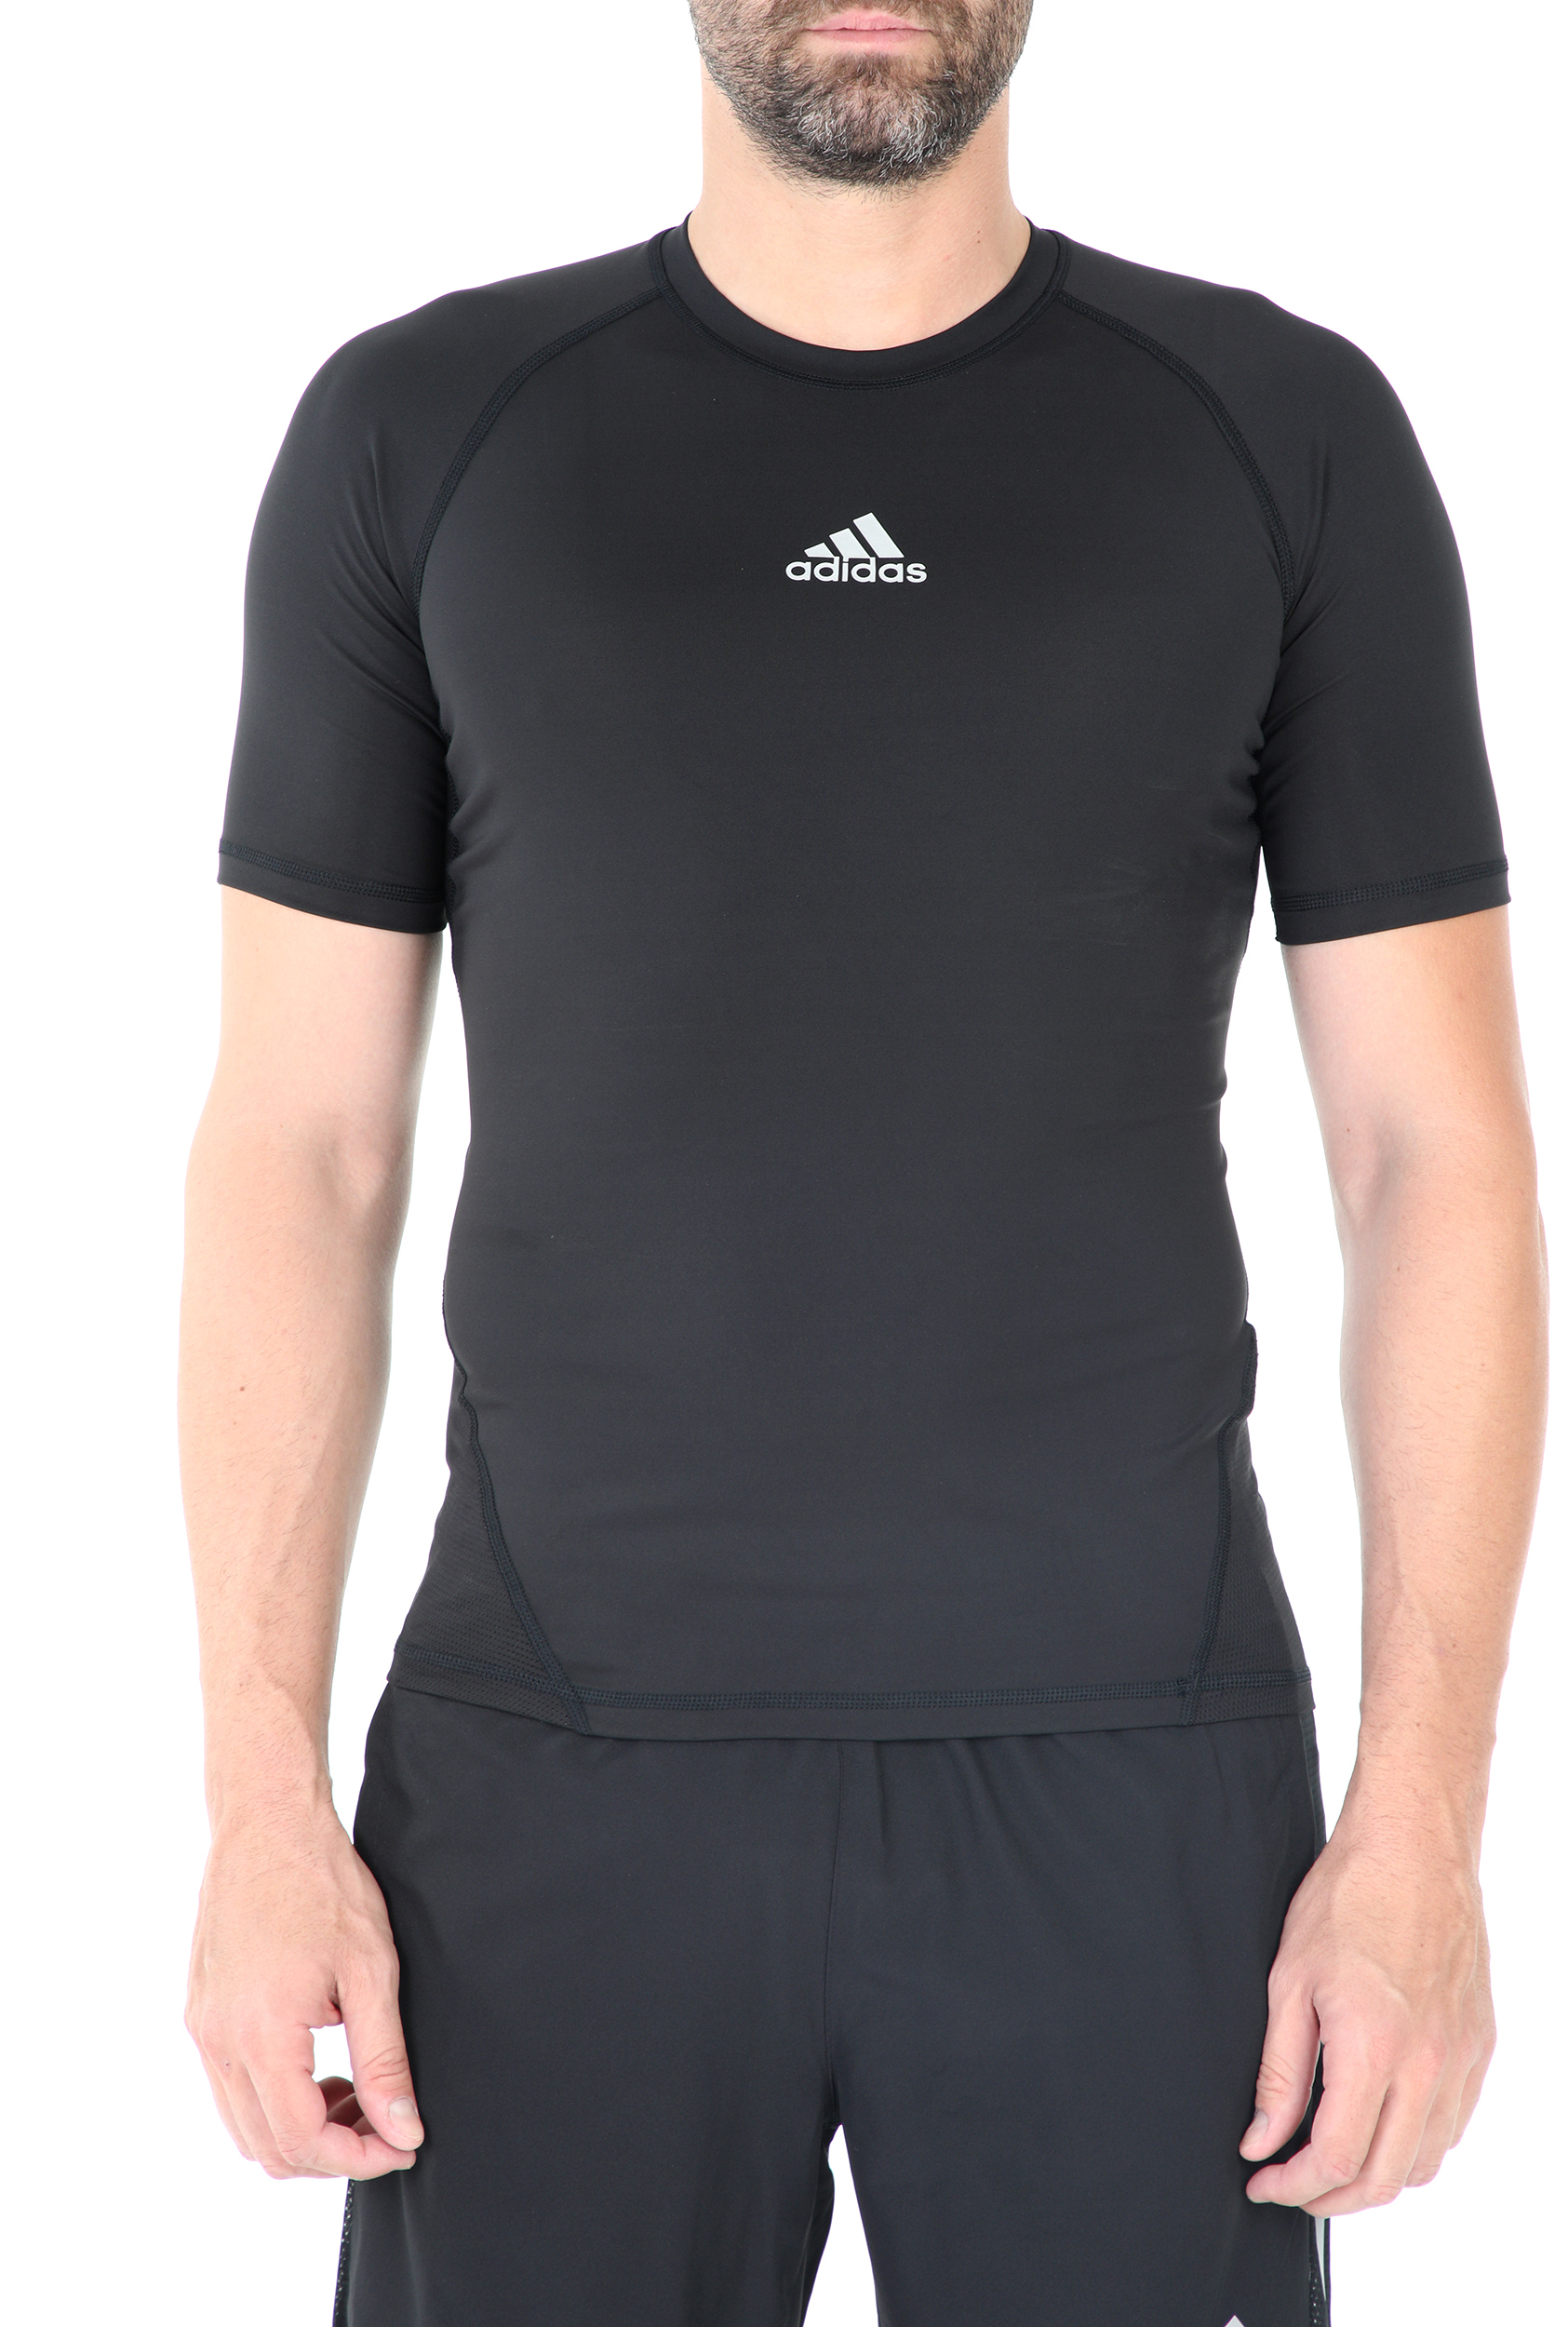 Ανδρικά/Ρούχα/Αθλητικά/T-shirt adidas Performance - Ανδρική αθλητική μπλούζα adidas ASK SPRT μαύρη